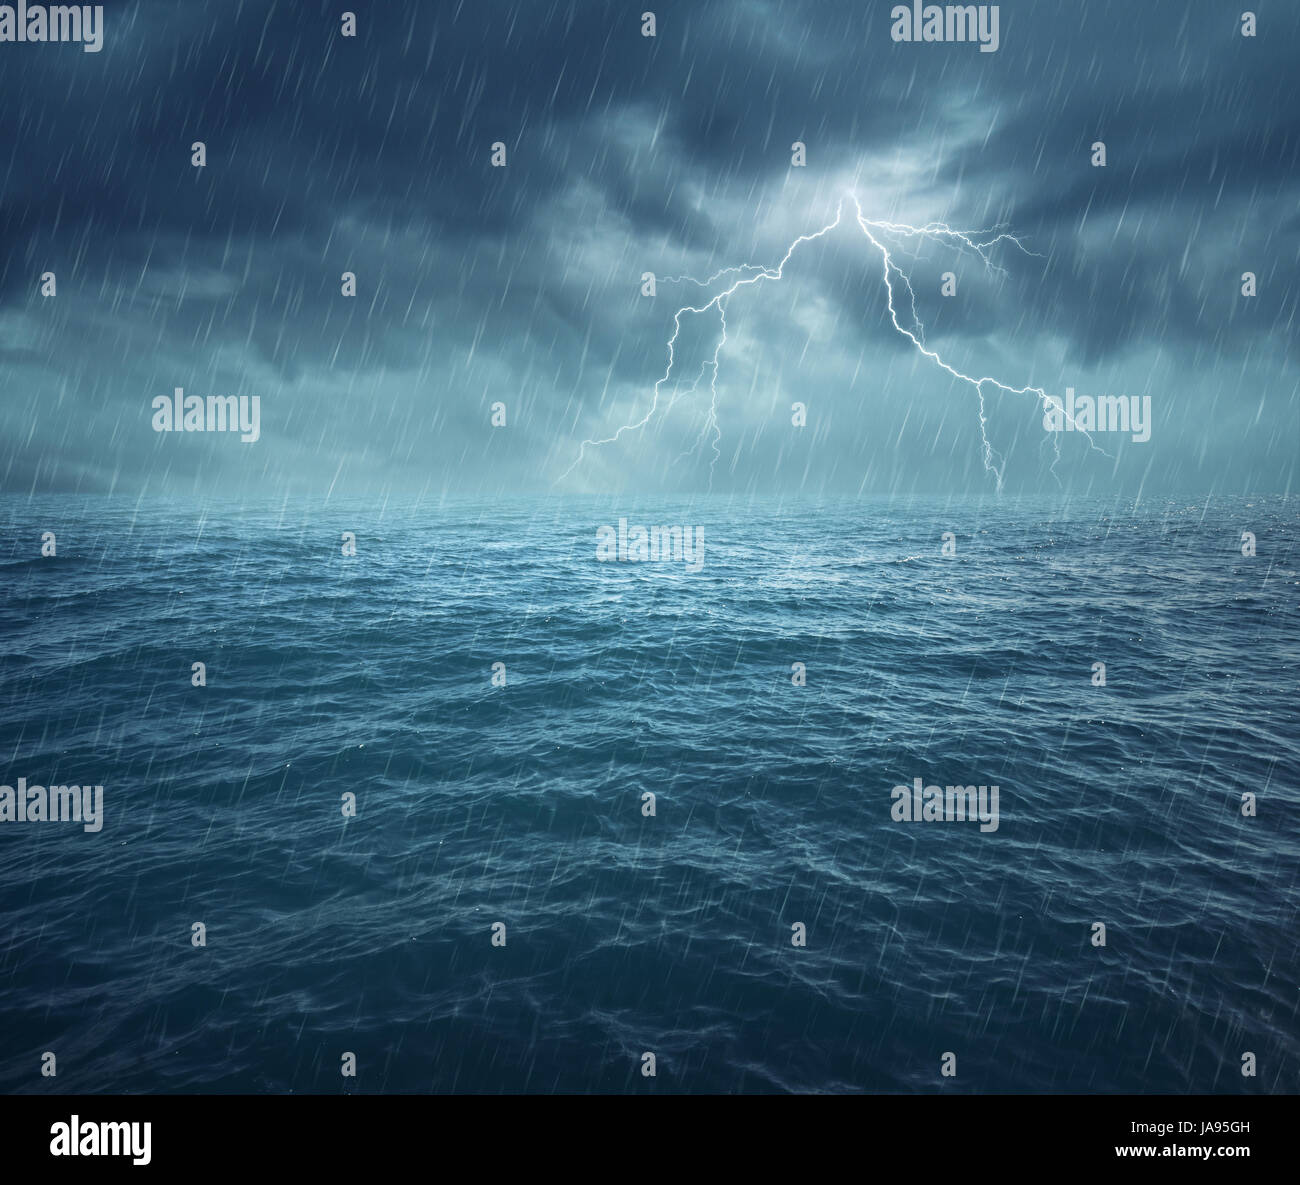 Immagine di notte mare tempestoso con grandi onde e fulmini Foto Stock